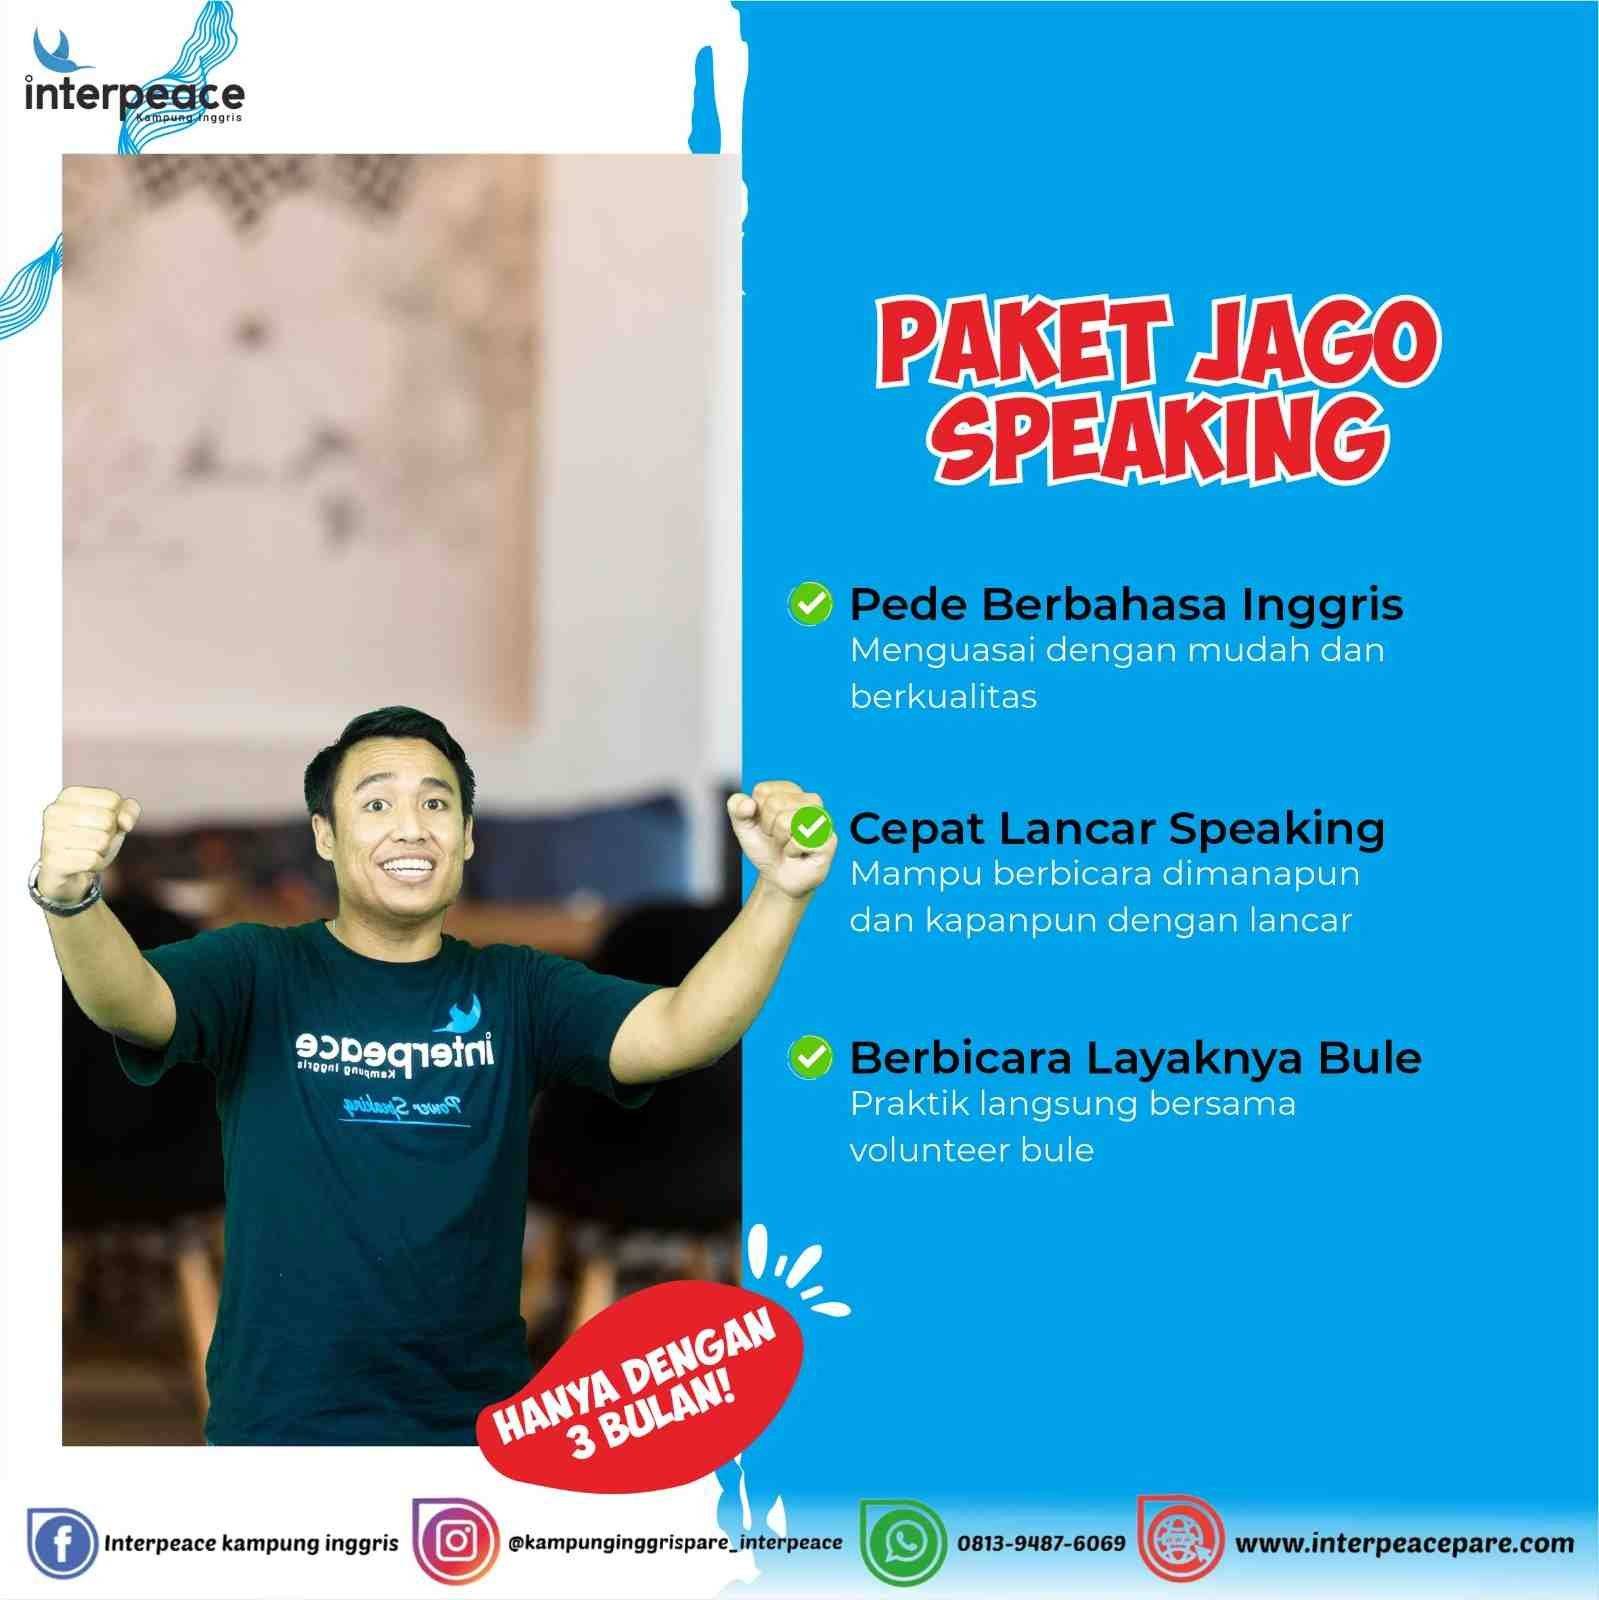 paket jago speaking kampung inggris pare interpeace